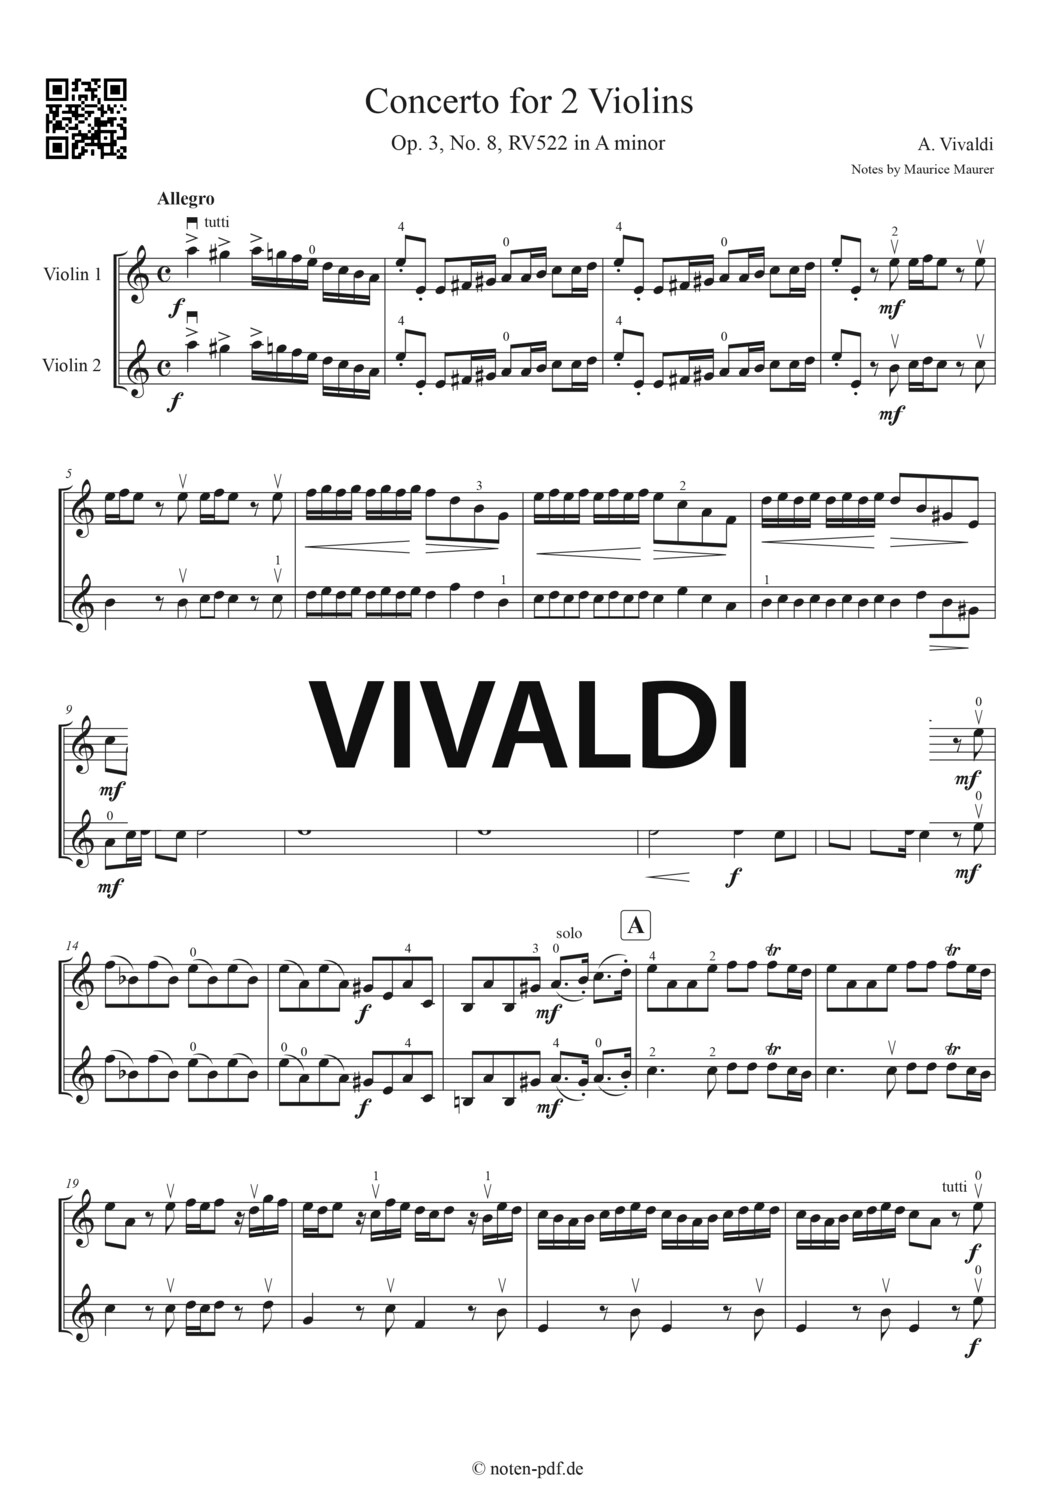 Vivaldi: Concerto for 2 Violins in A minor - 1. Movement